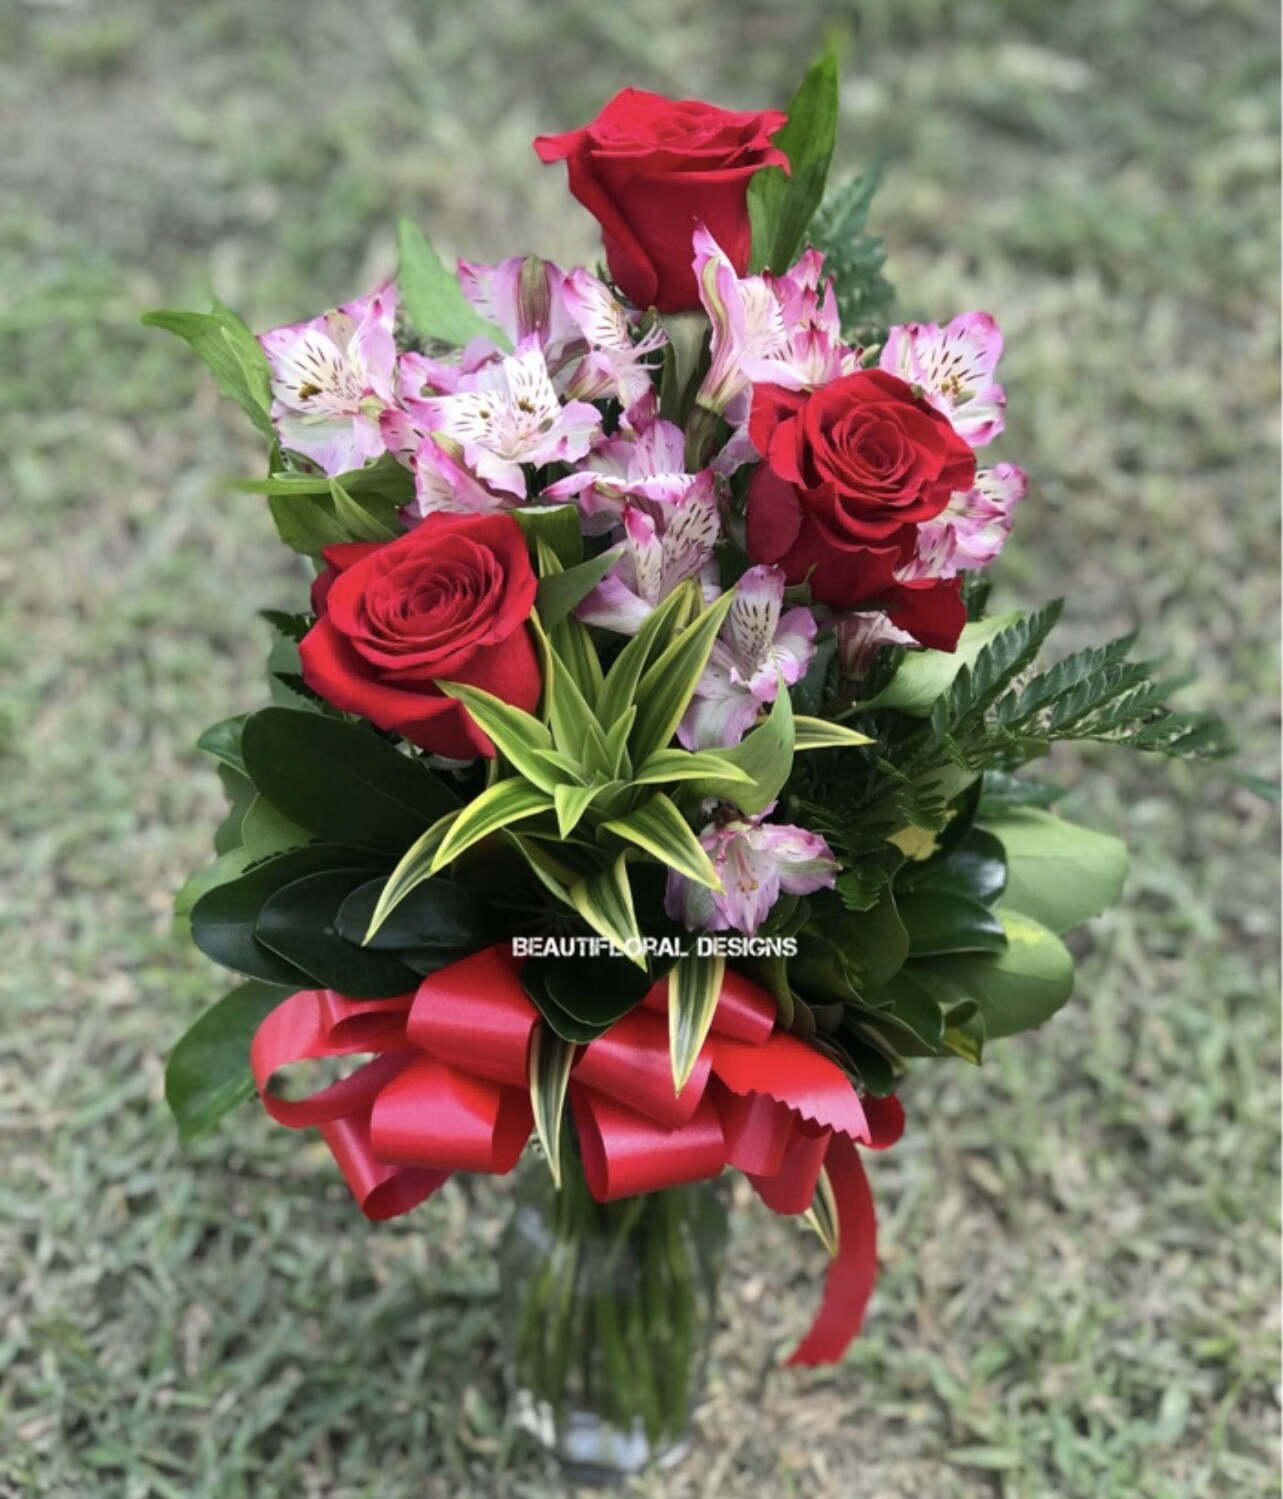 Roses &amp; alstroemerias vase arrangement